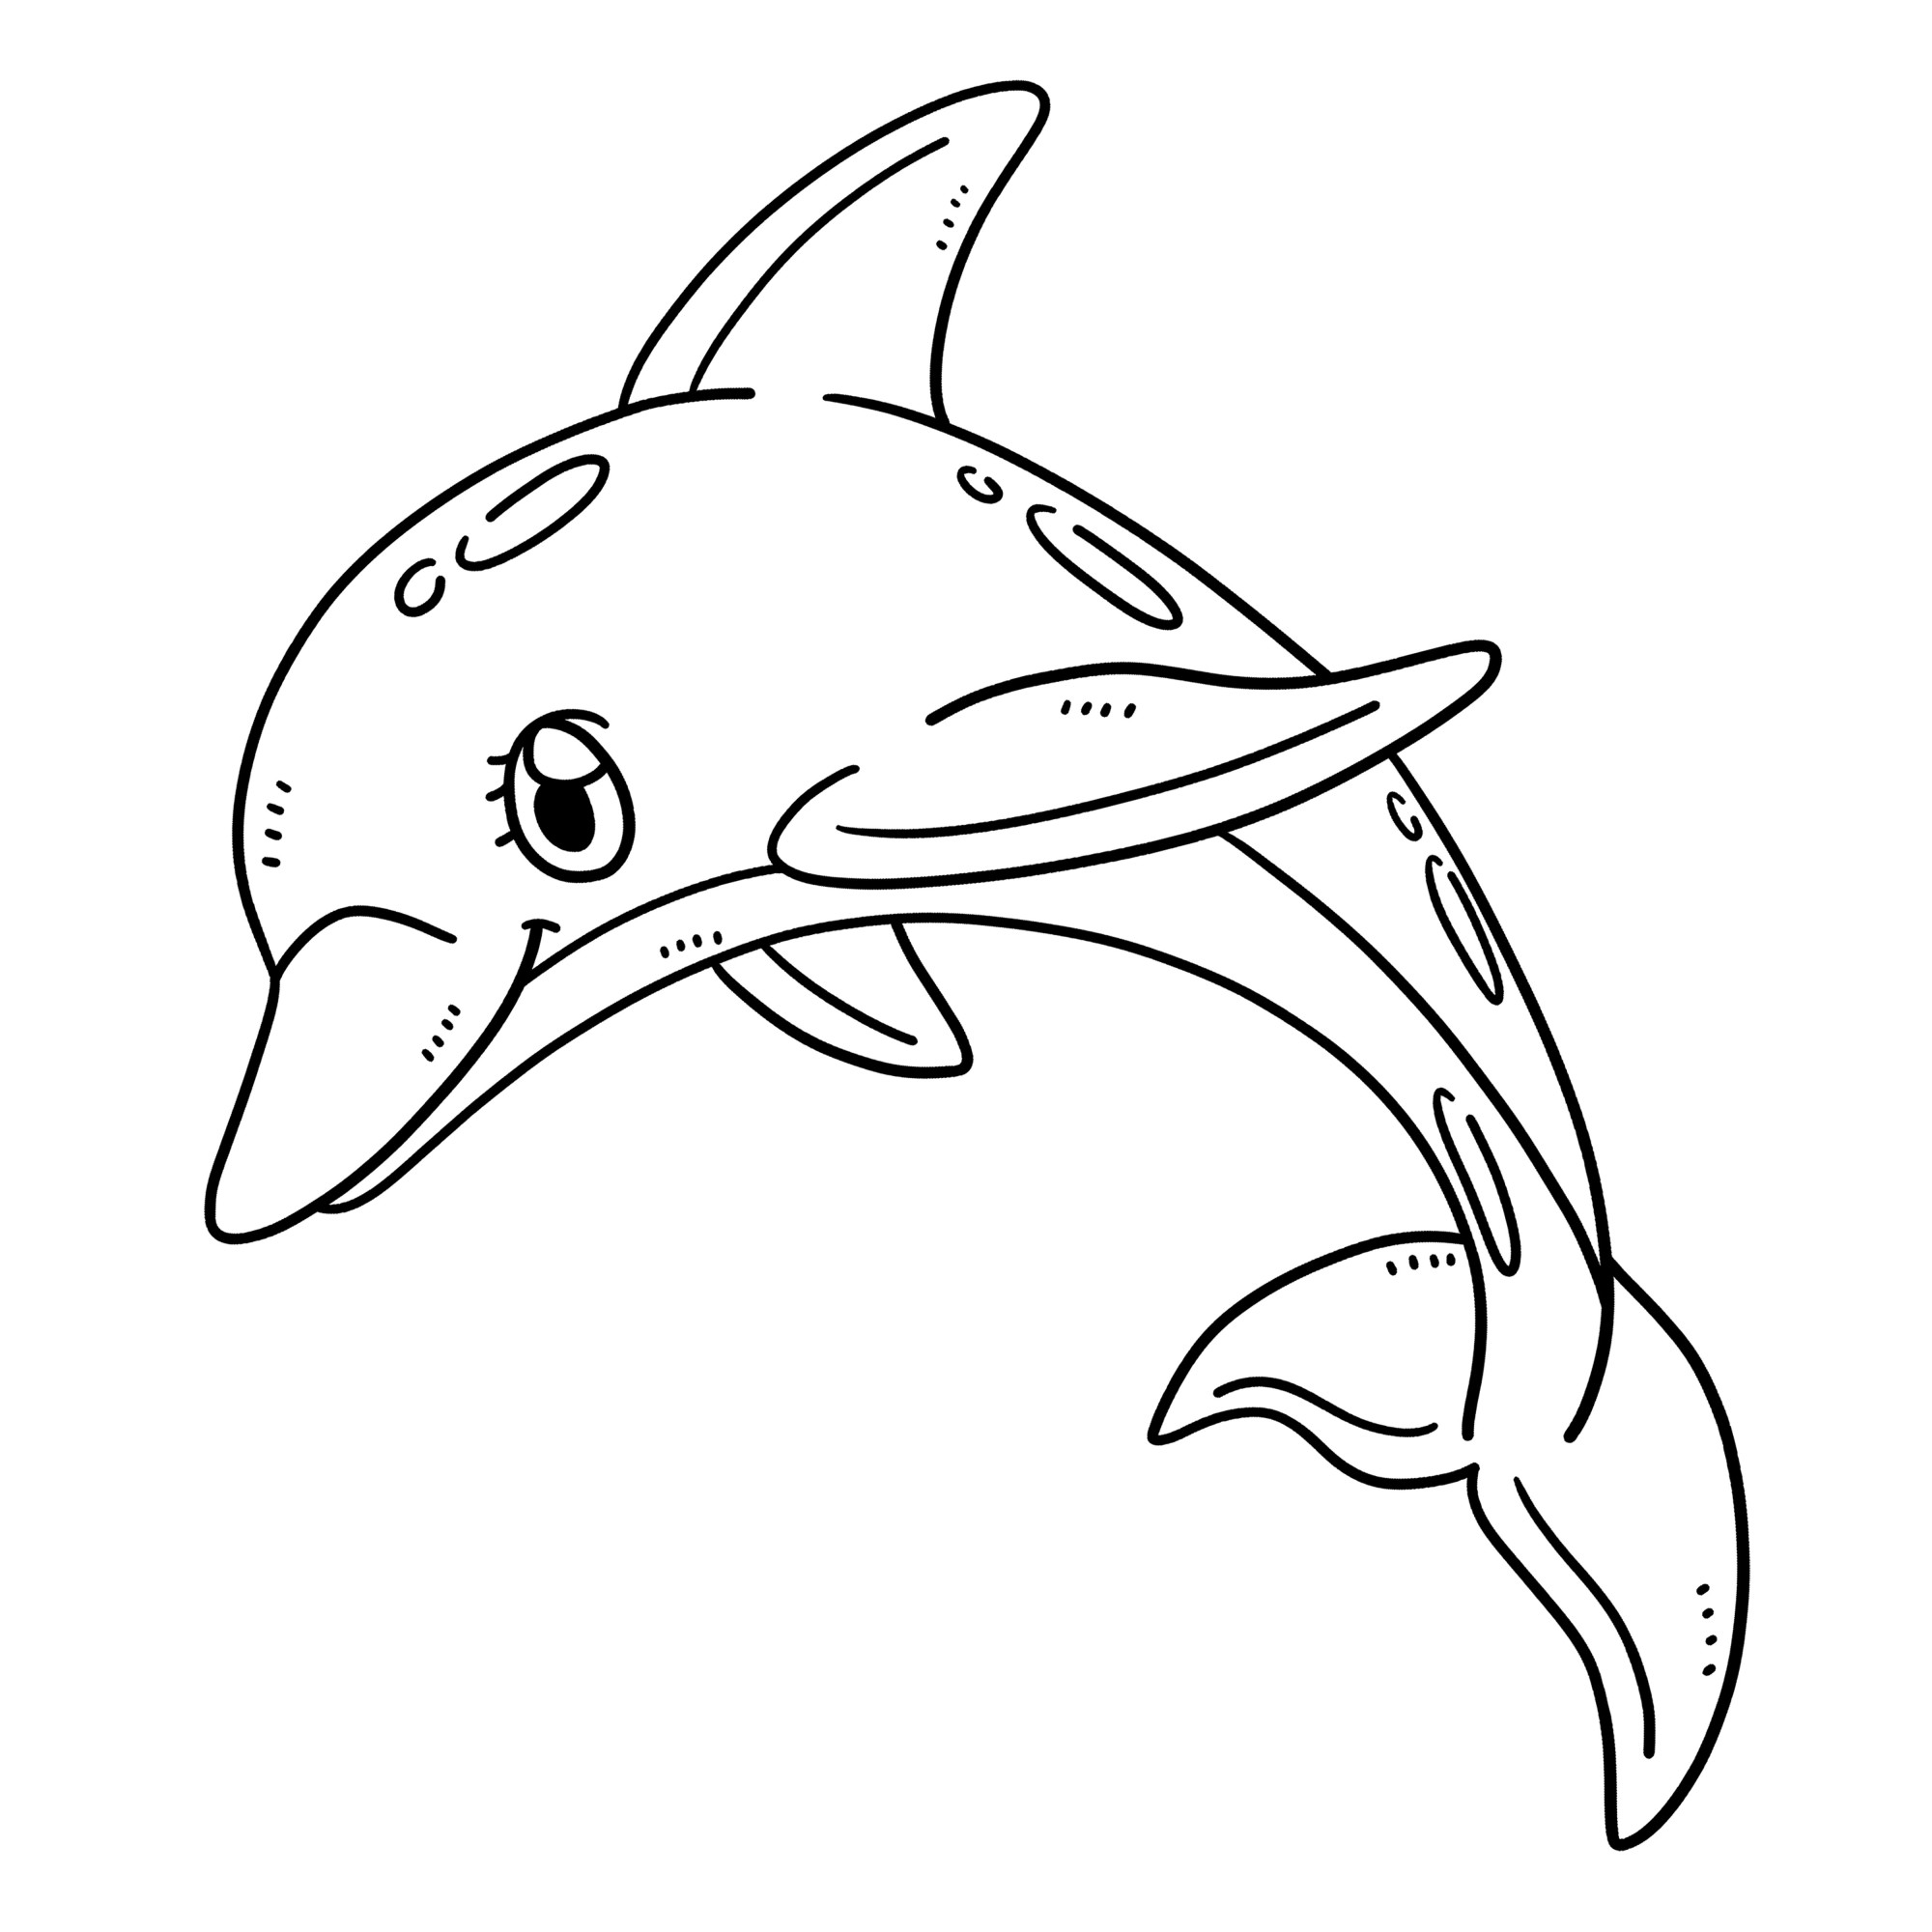 Раскраска для детей: дельфин «Гармония в движении»